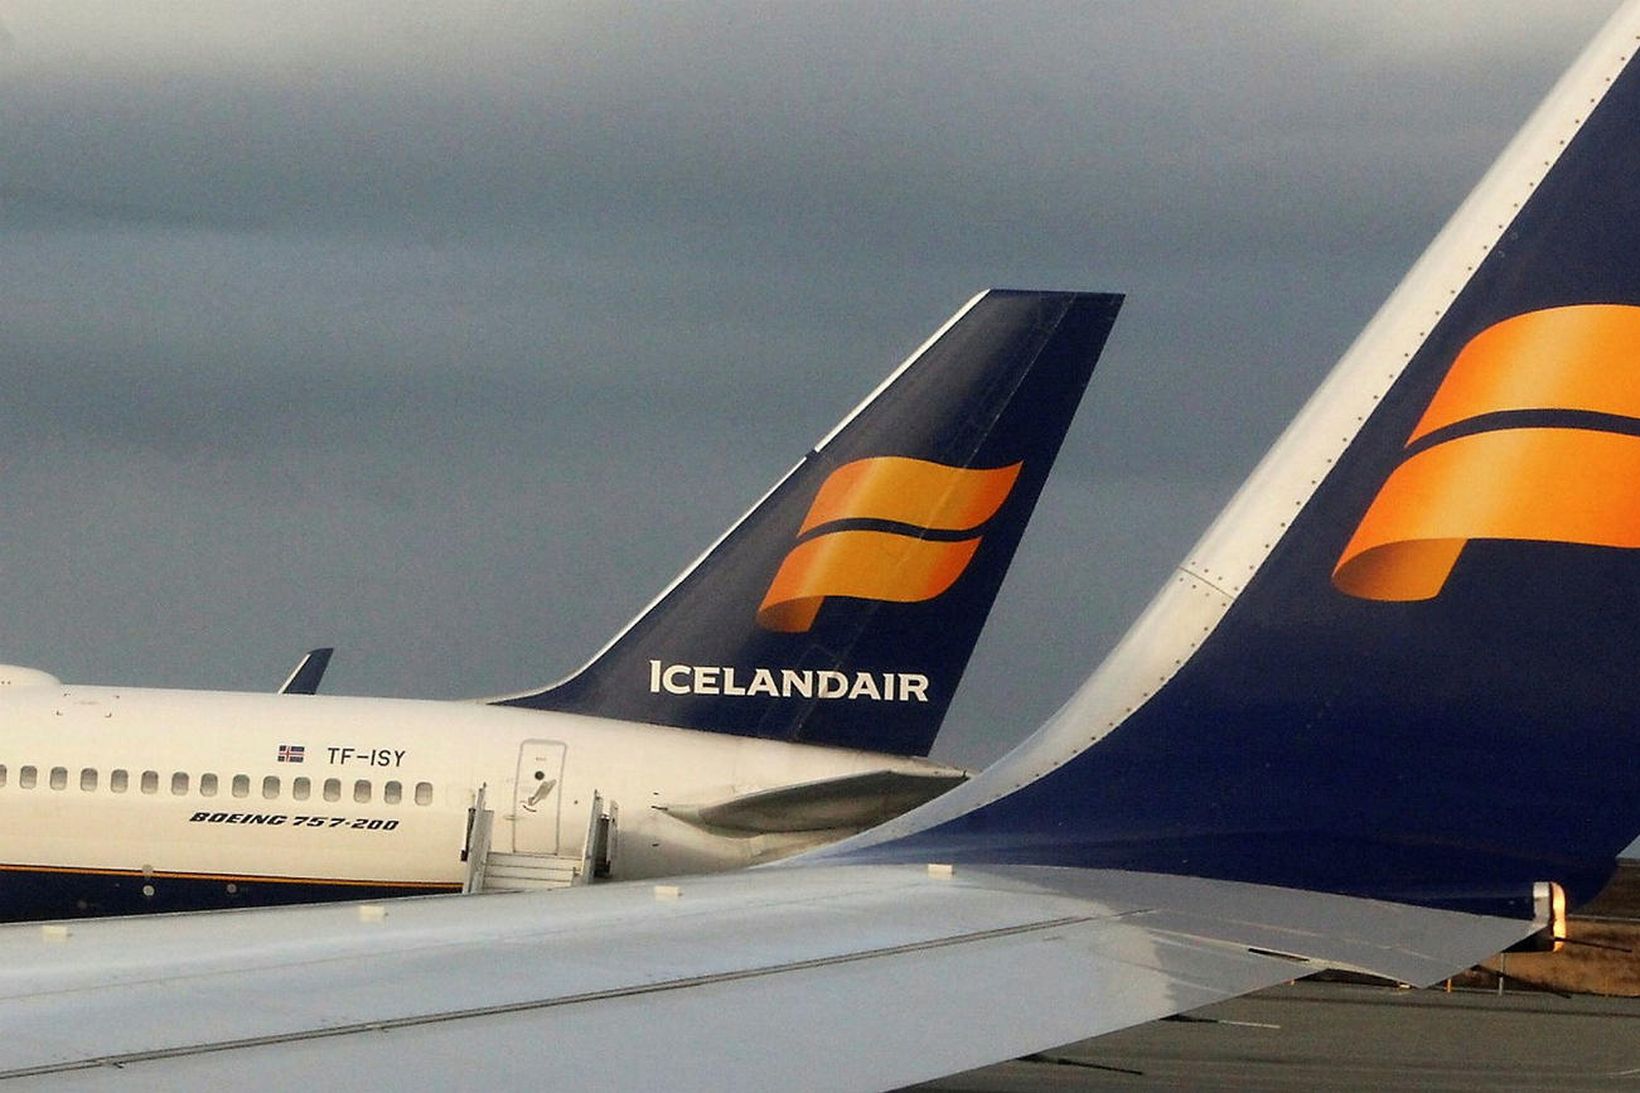 Þotur frá Icelandair.